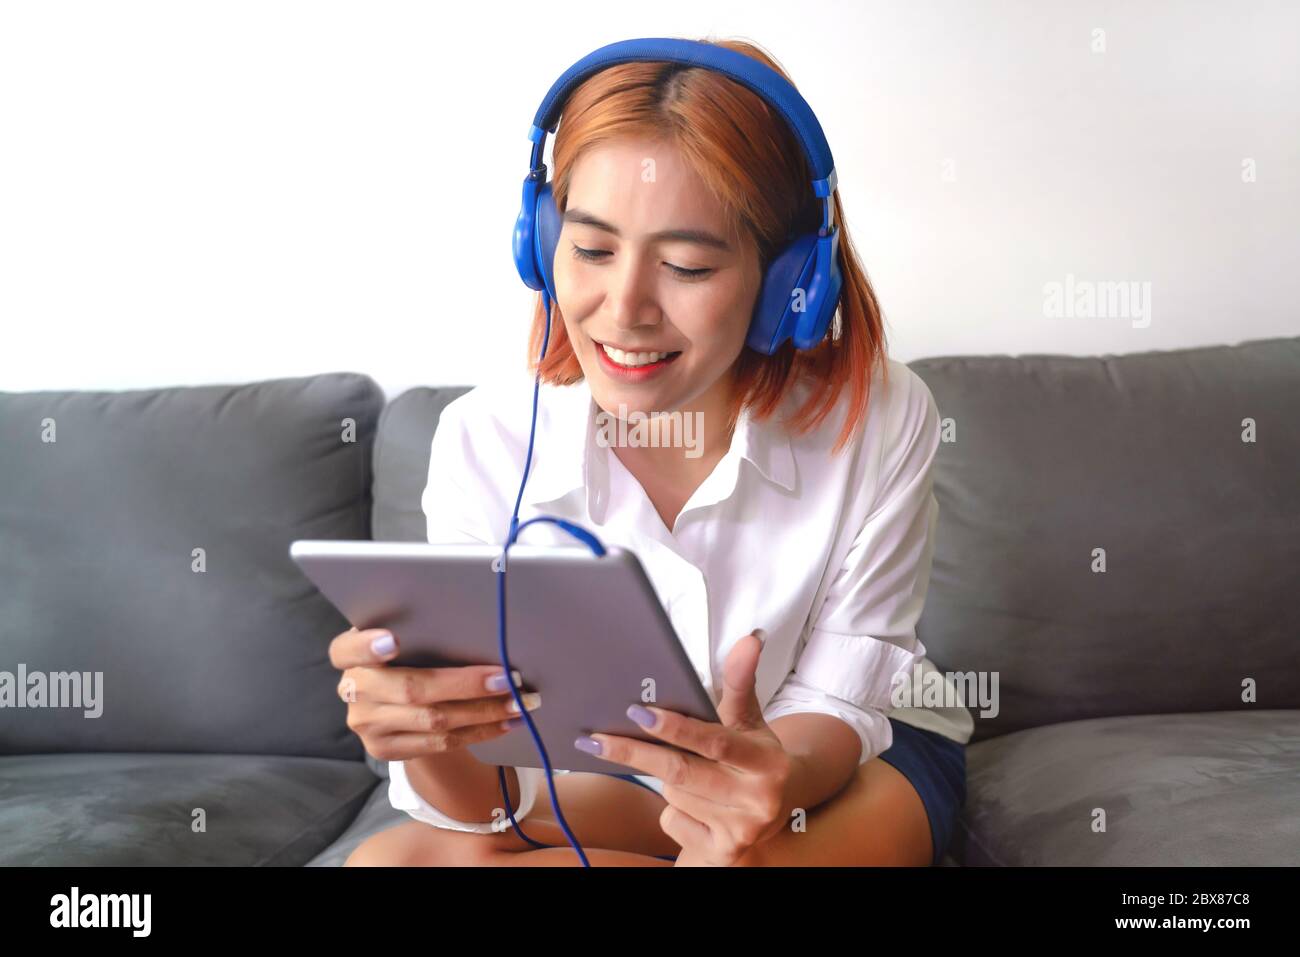 La jeune femme asiatique est heureuse de travailler à la maison. Elle utilise une tablette pour discuter par vidéo avec ses collègues d'une entreprise. Banque D'Images